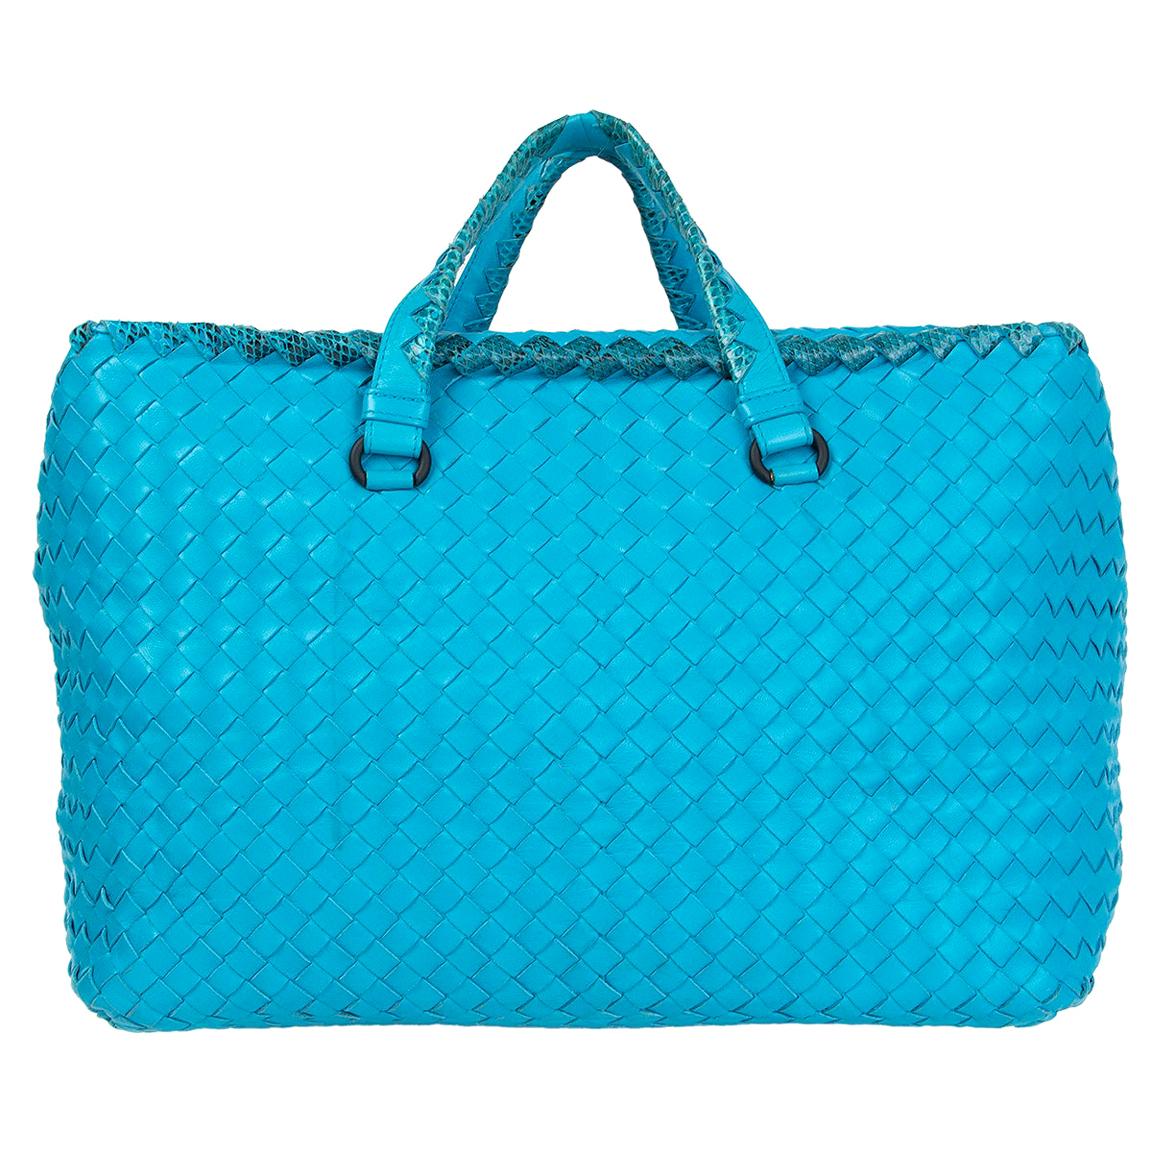 BOTTEGA VENETA turquoise leather & Karung Intrecciato Tote Bag